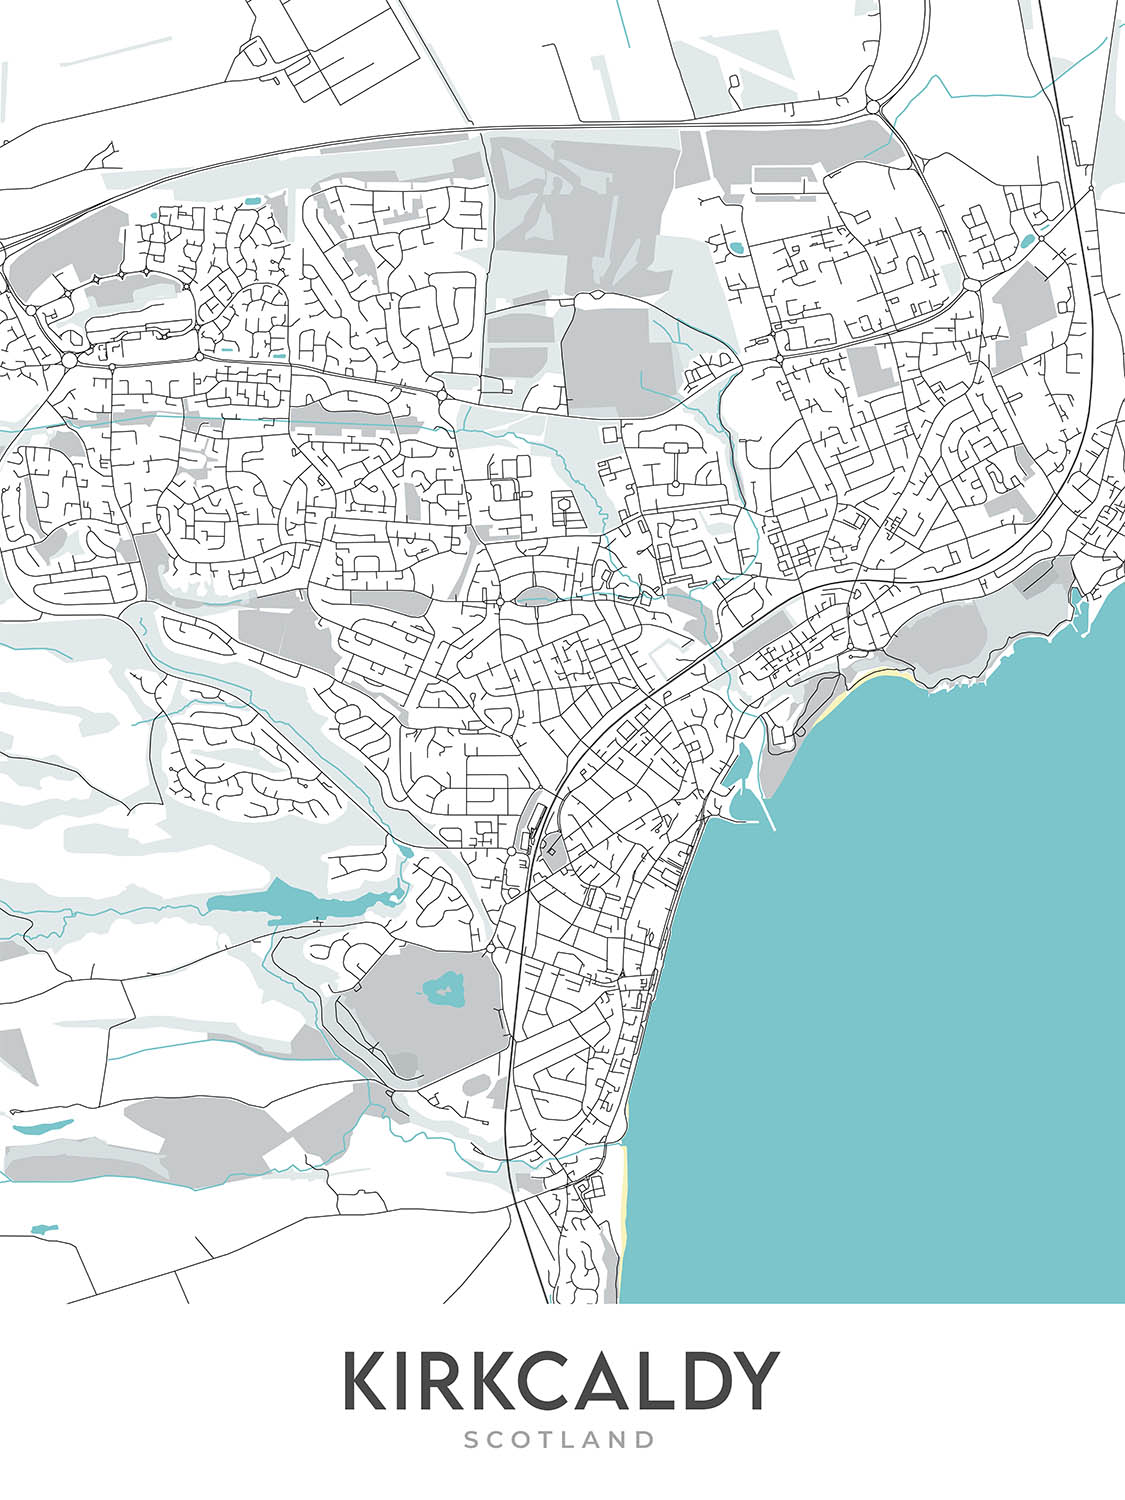 Mapa moderno de la ciudad de Kirkcaldy, Escocia: Castillo Ravenscraig, Parque Beveridge, A921, Pathhead, Puerto